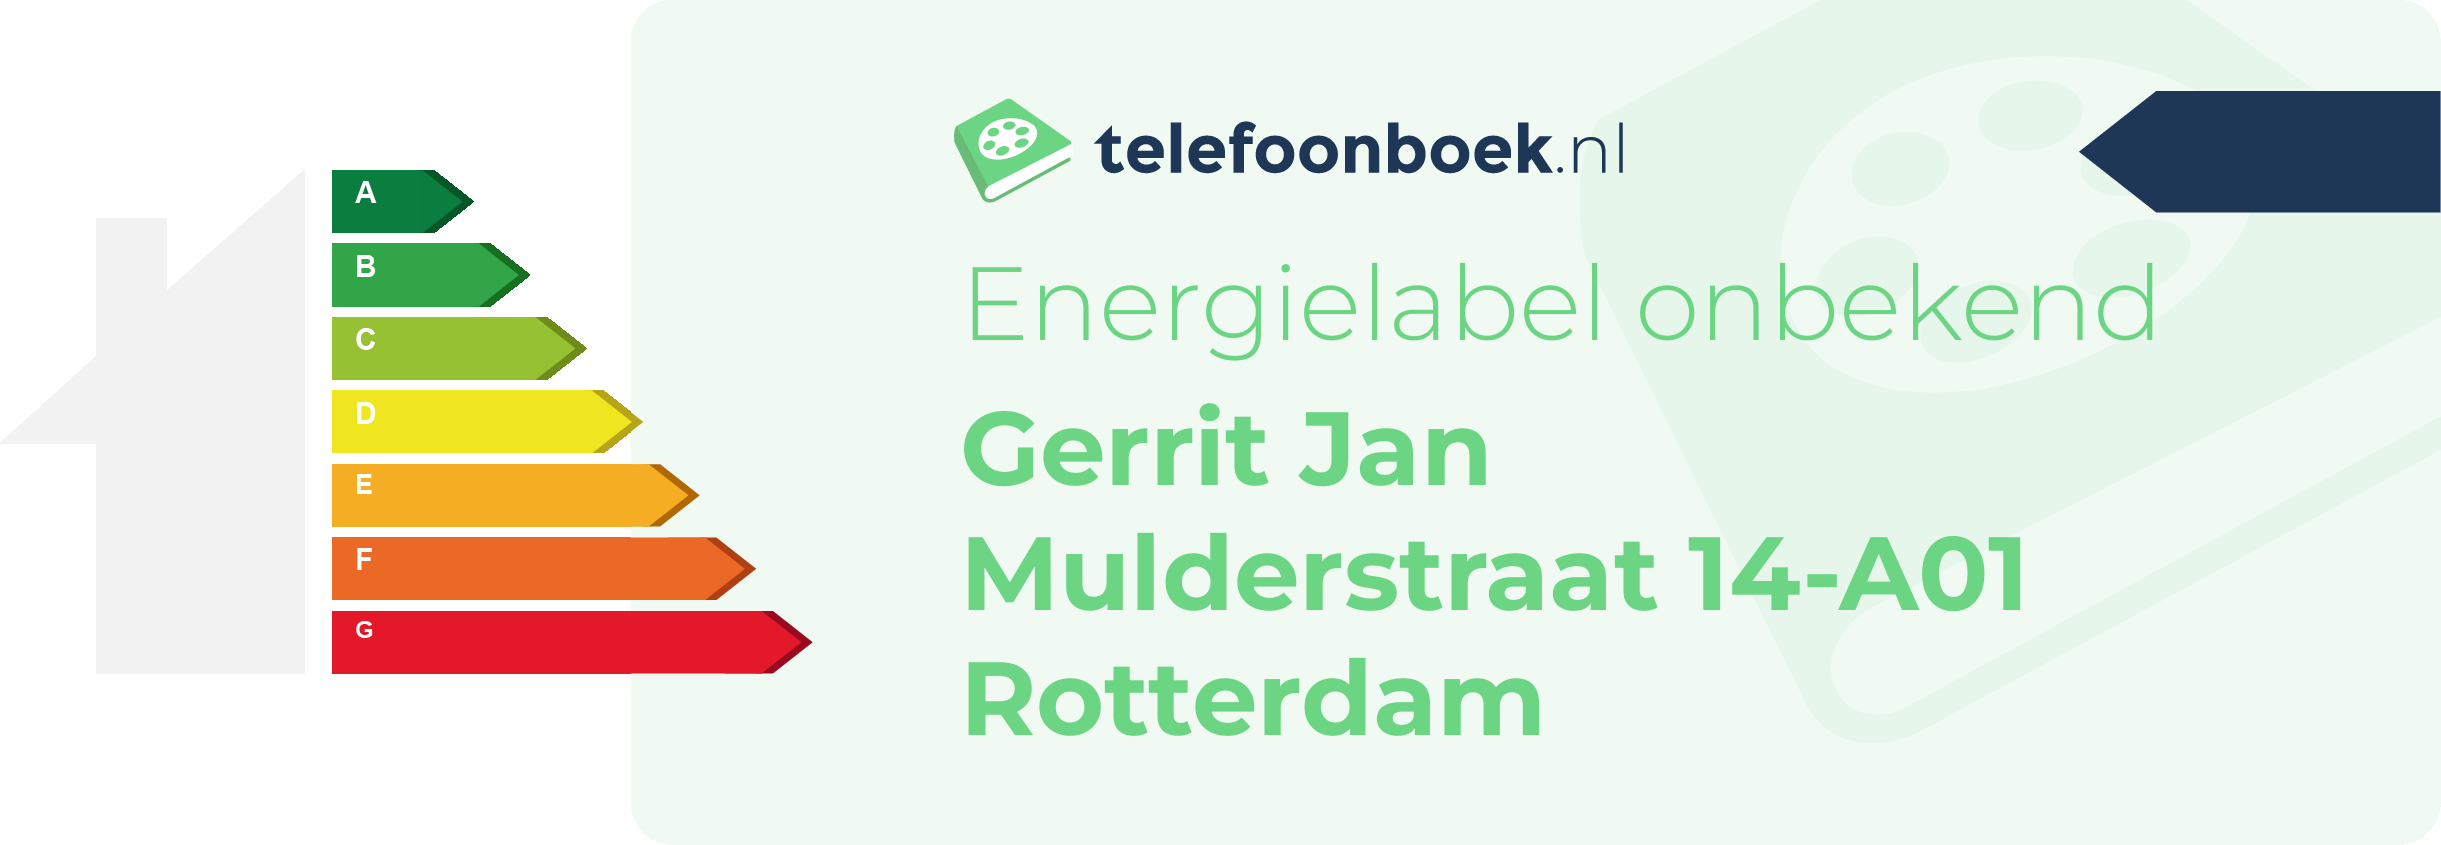 Energielabel Gerrit Jan Mulderstraat 14-A01 Rotterdam